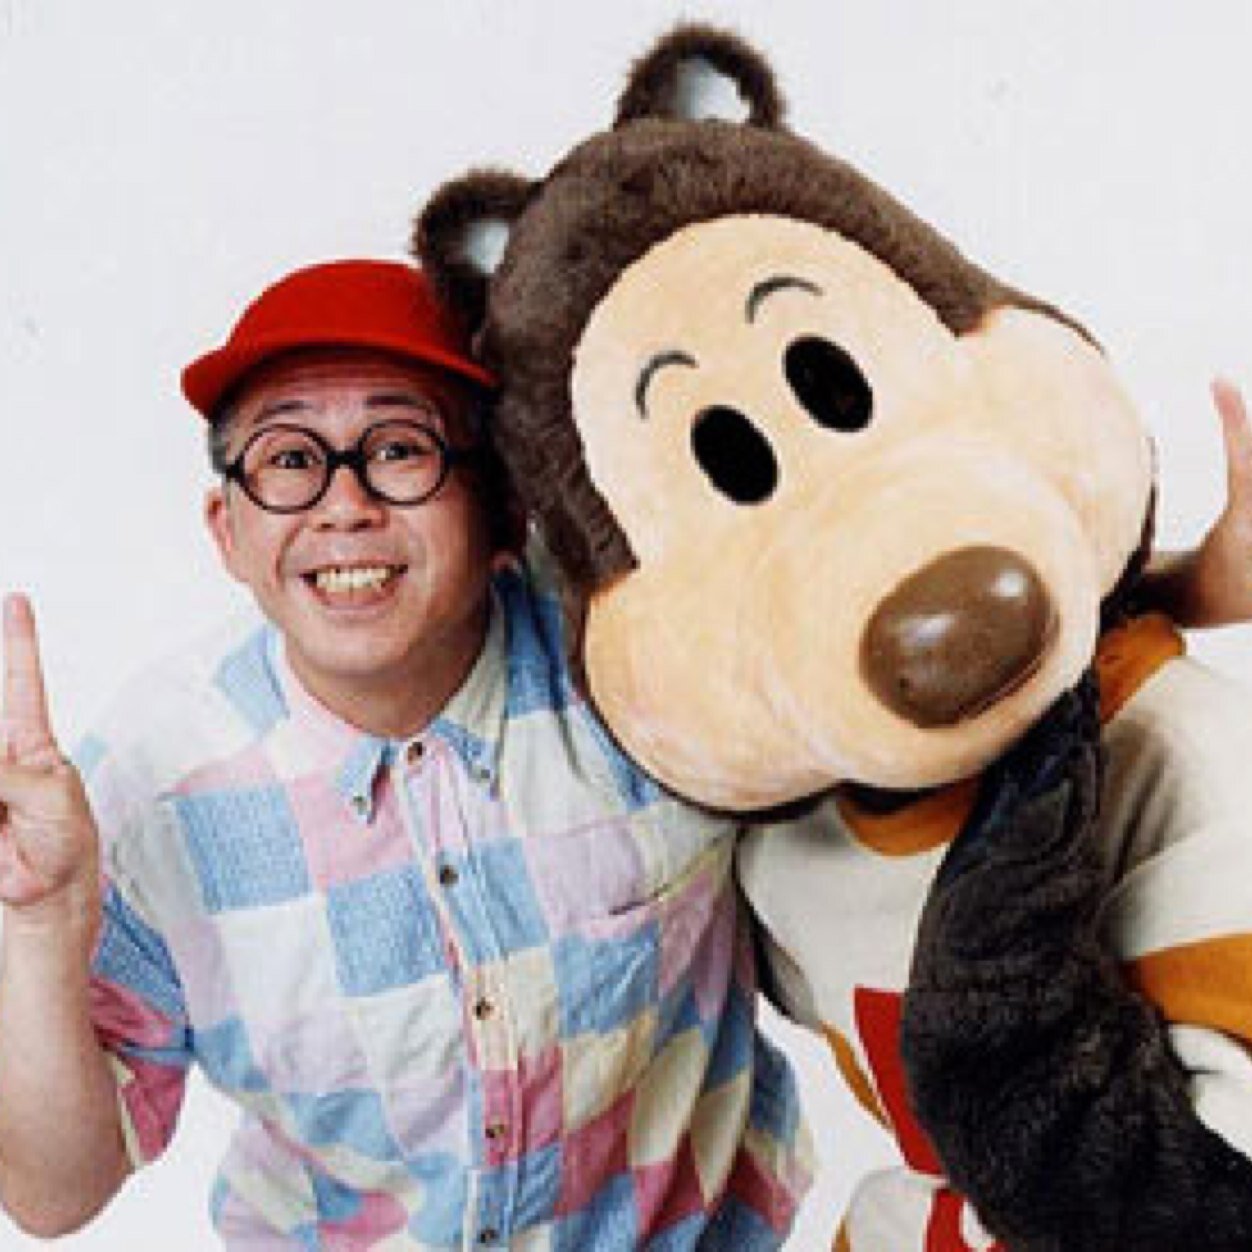 NHK教育テレビでワクワクさんとして出演していた久保田雅人です。この度Twitterを始めました。よろしくお願いします。